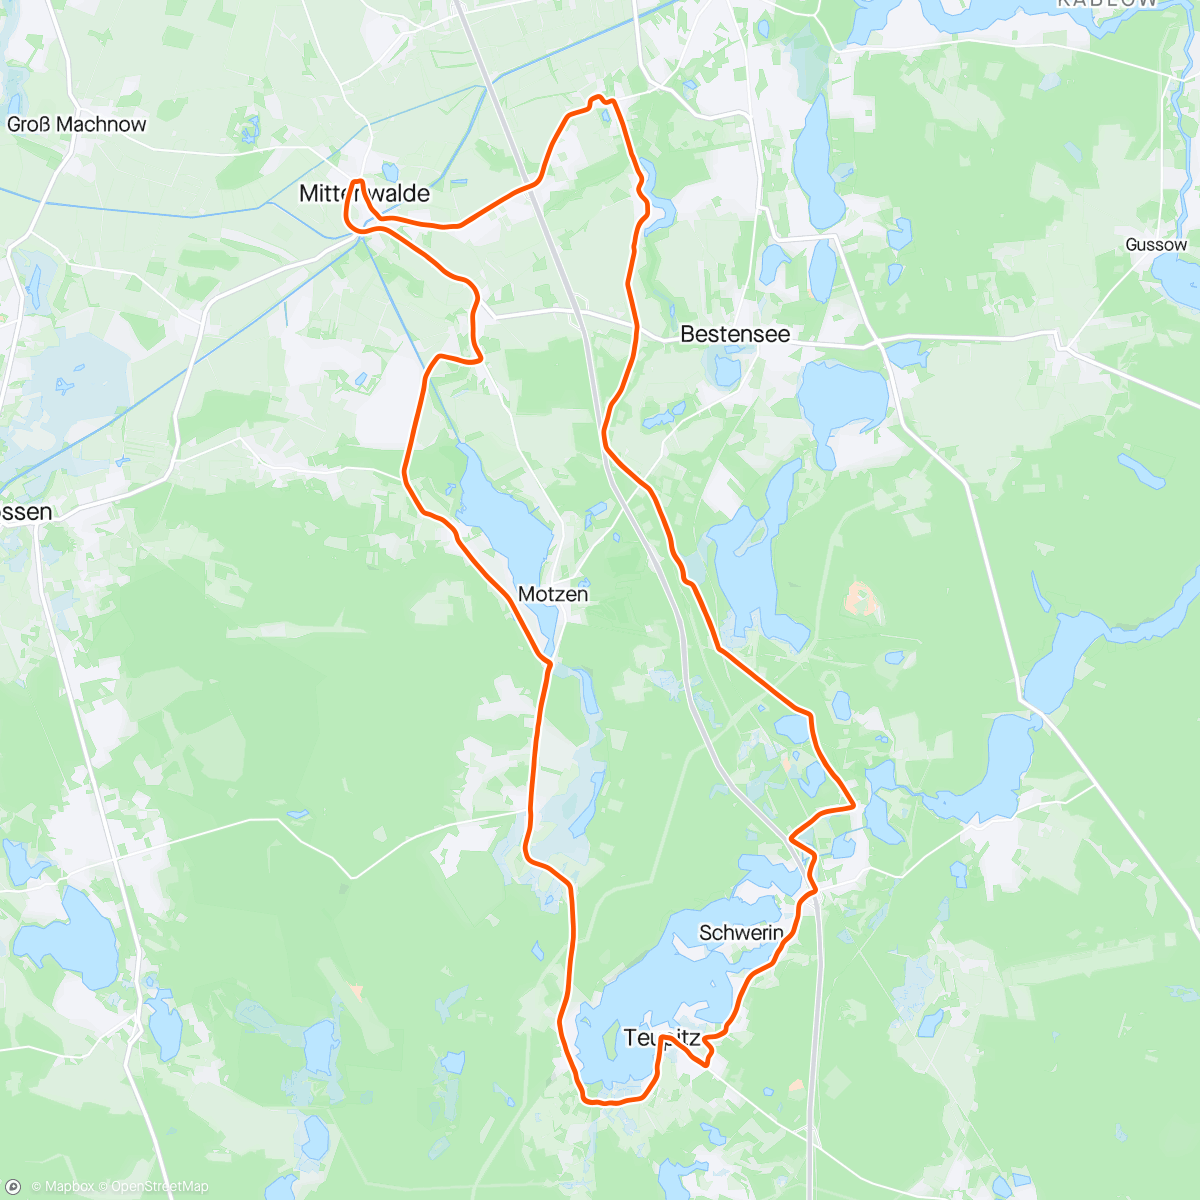 「Mittenwalde Straßenrennen」活動的地圖